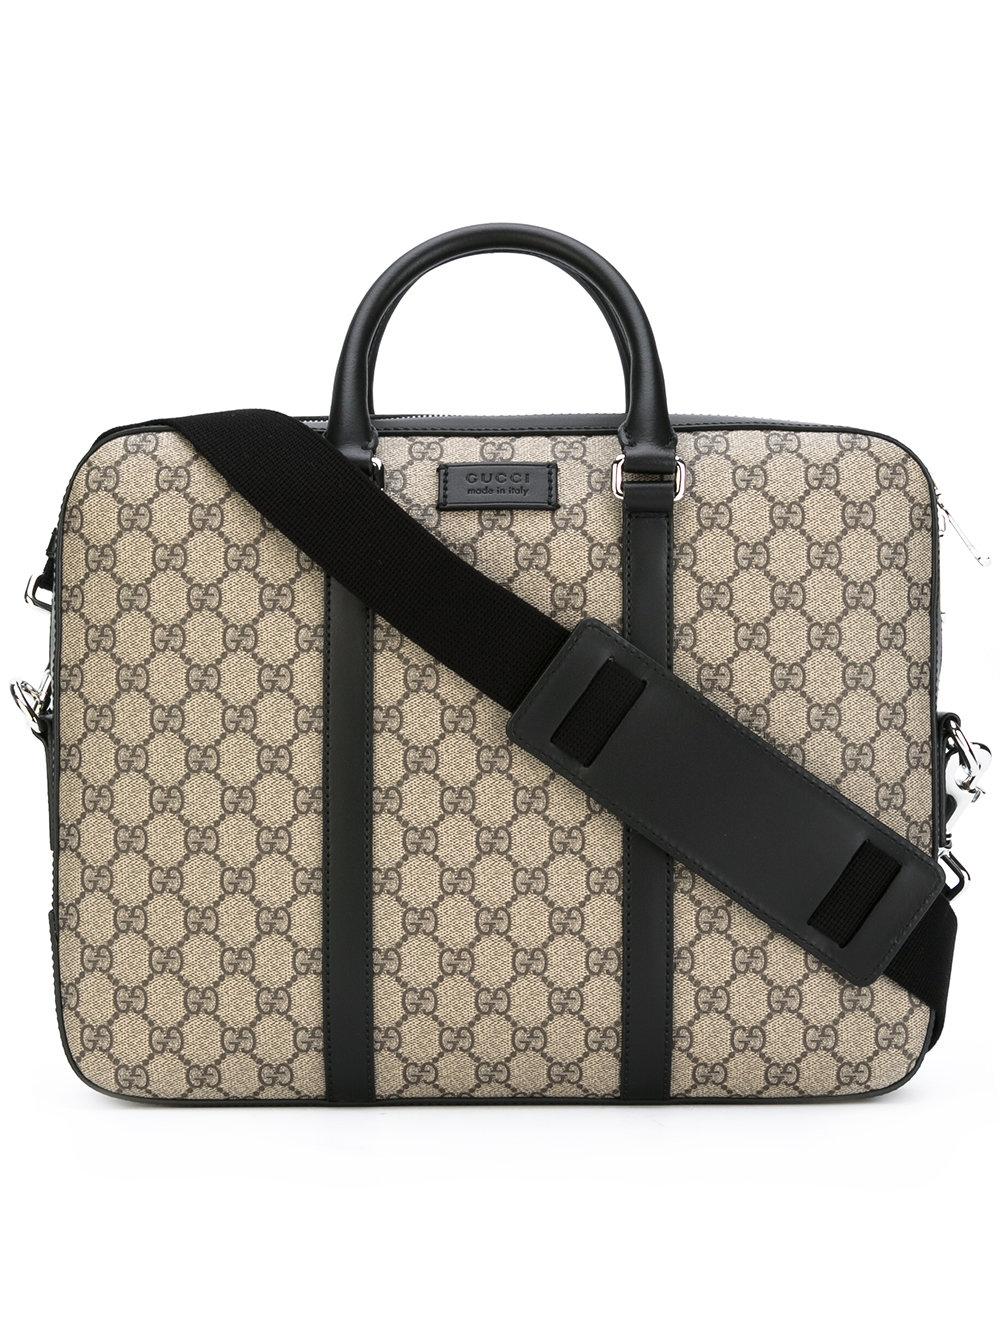 gucci women's briefcase